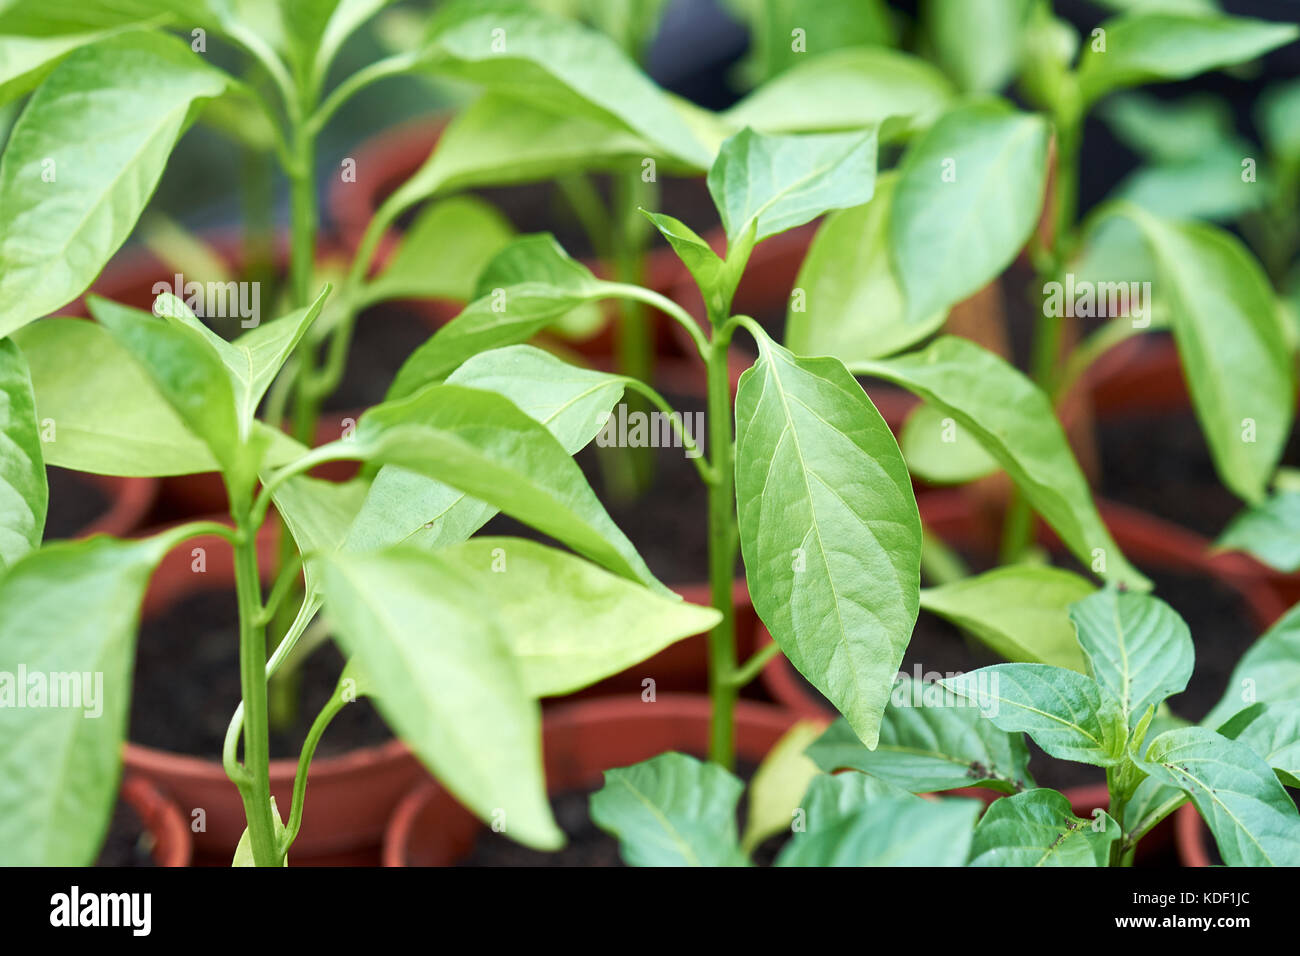 Giovani pepe misto plug piante, Razzmataz & Romano, crescendo in compost di plastica riempiti vasi per piante in una serra, UK. Foto Stock